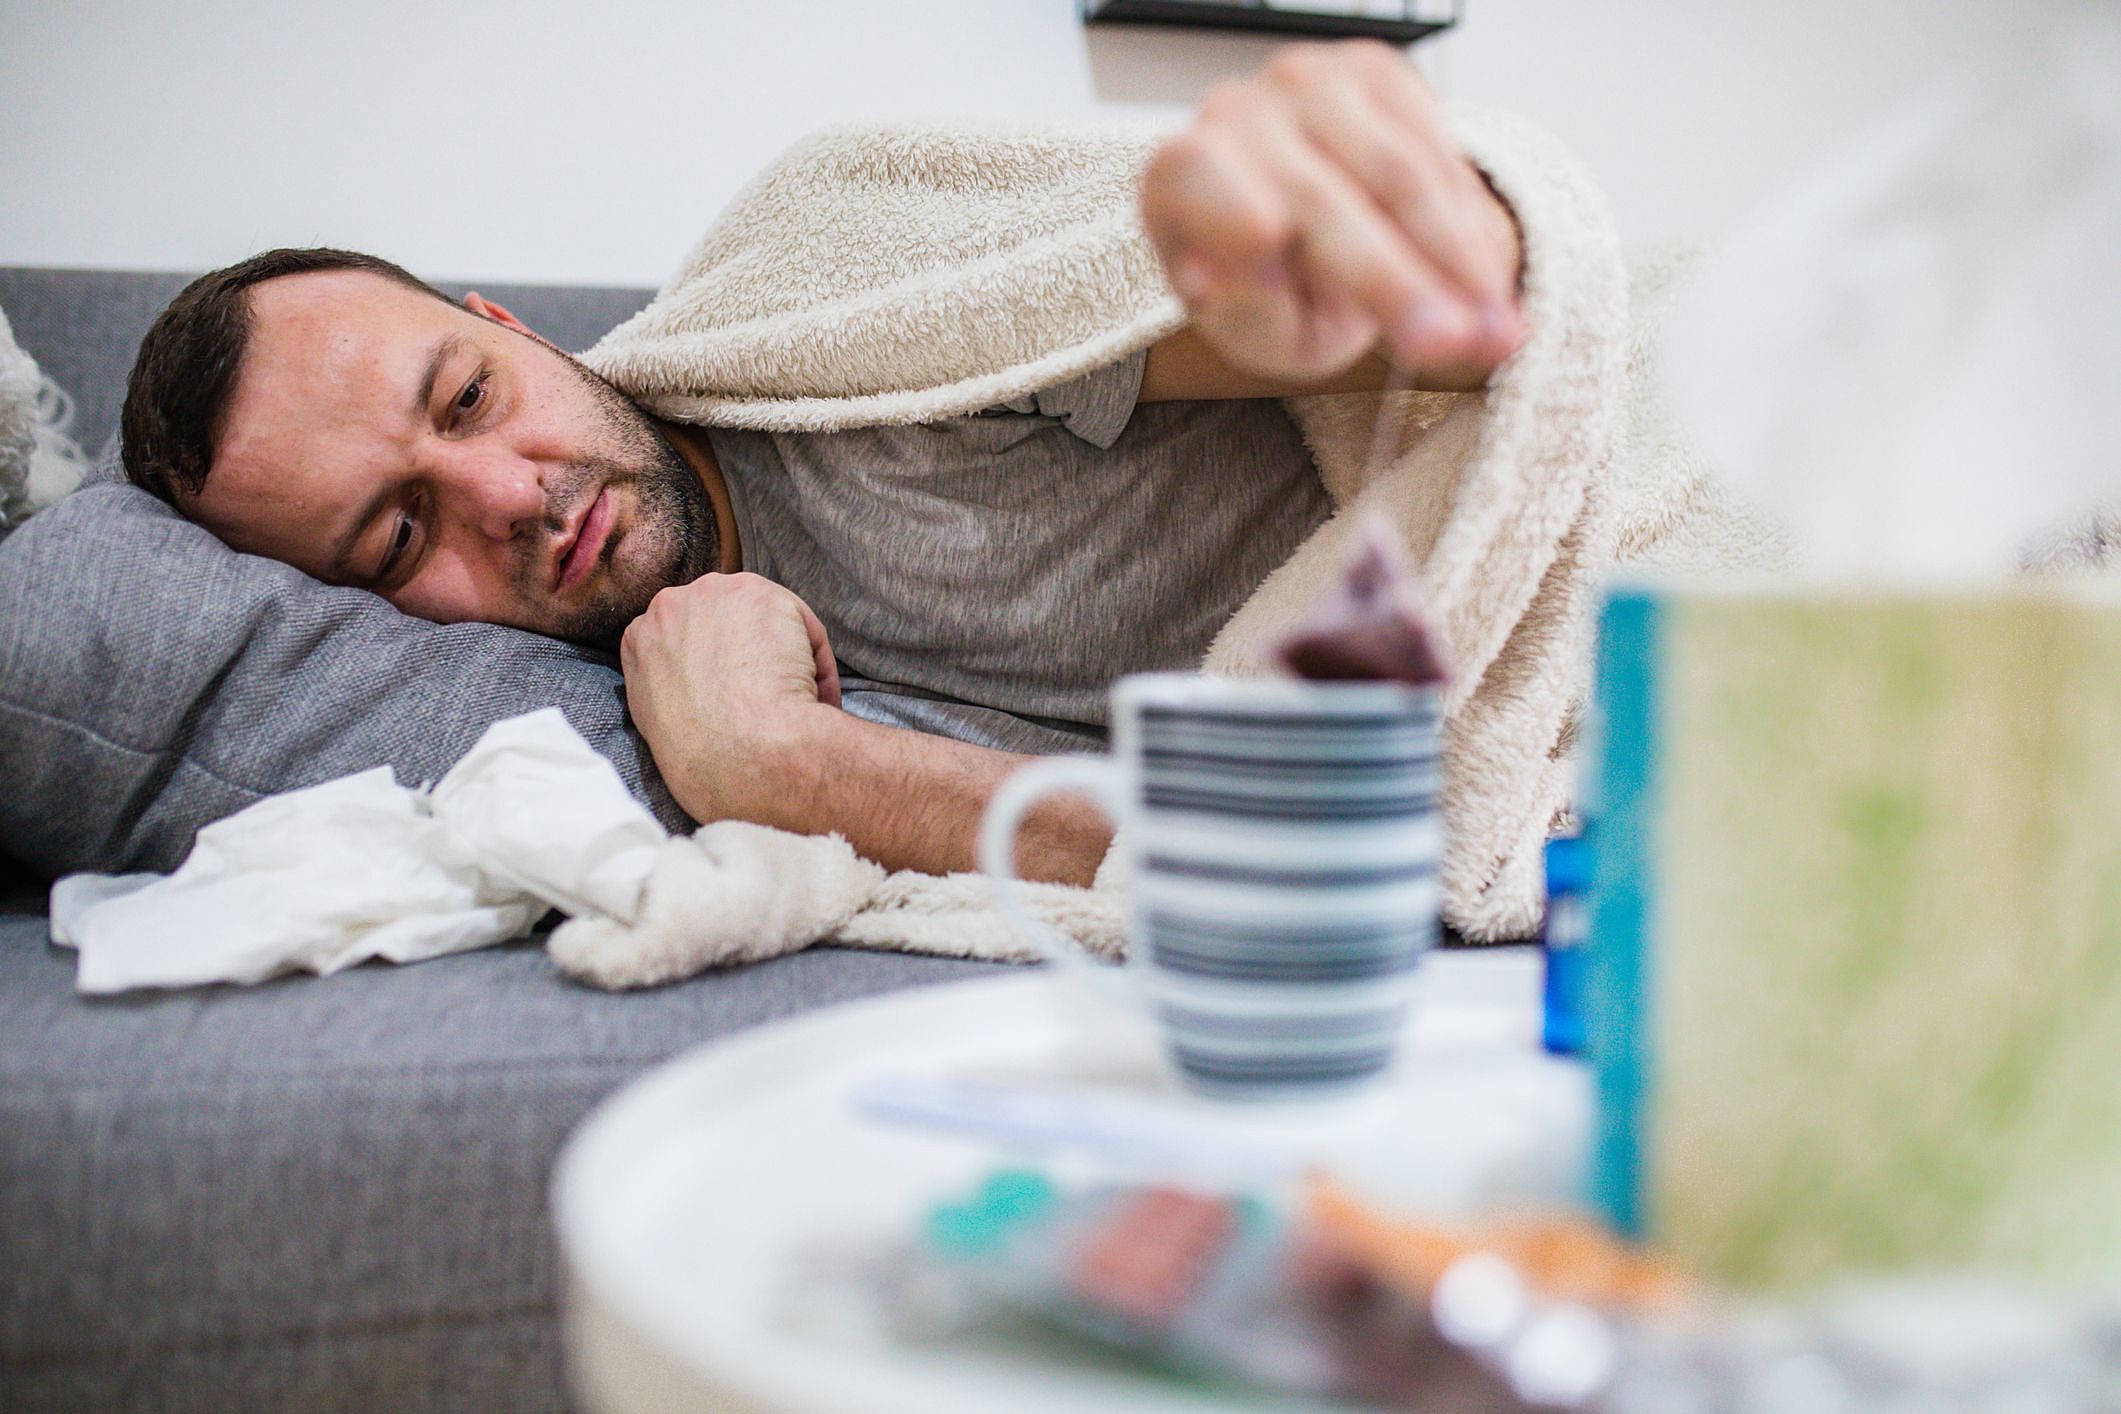 Entenda os 3 tipos de gripe e seus sintomas e tratamentos!